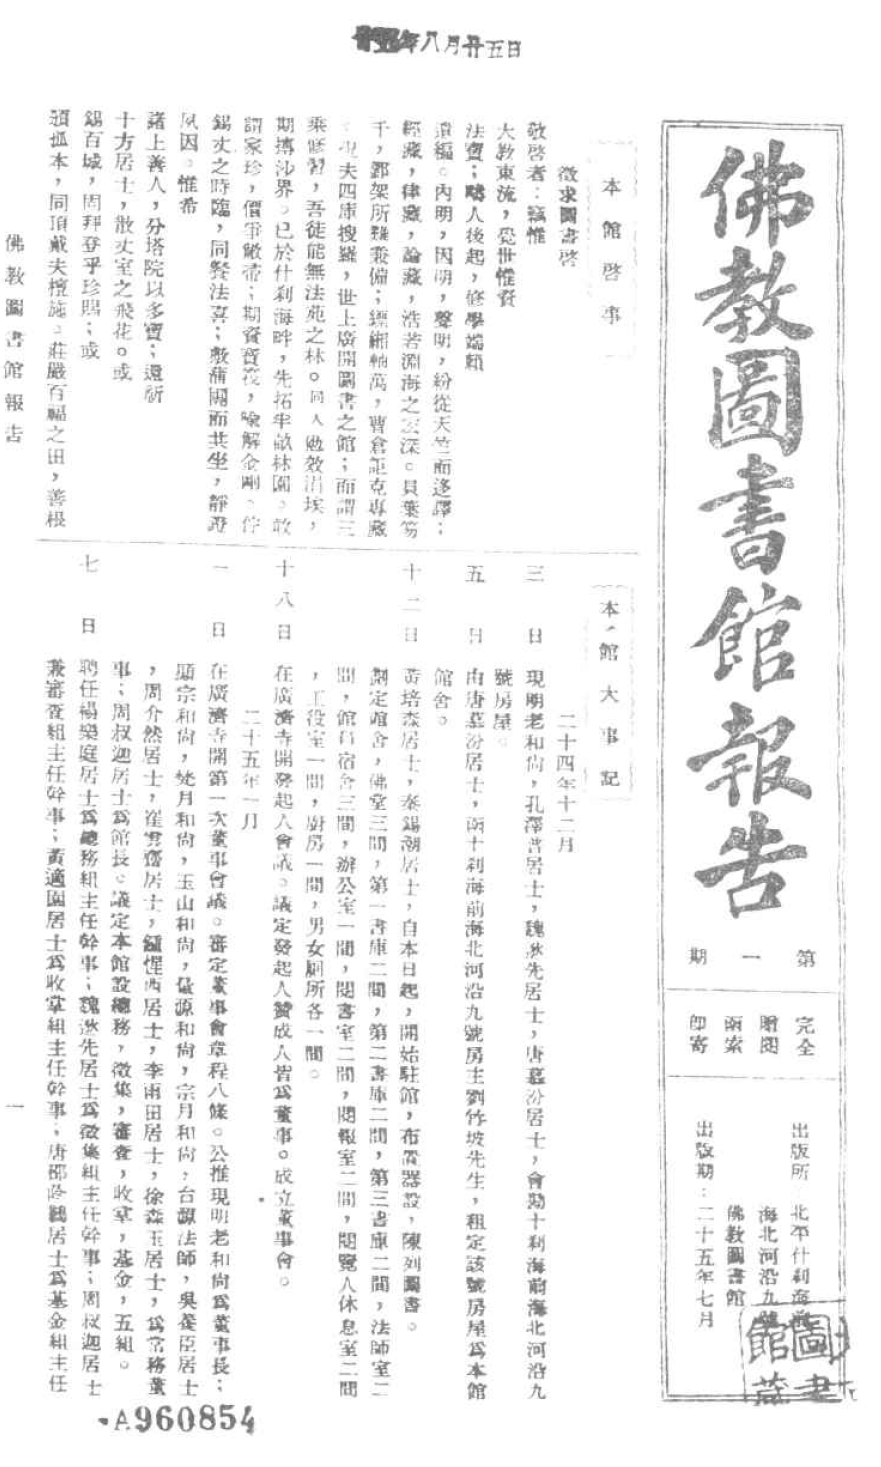 File:Fojiao tushuguan baogao.png